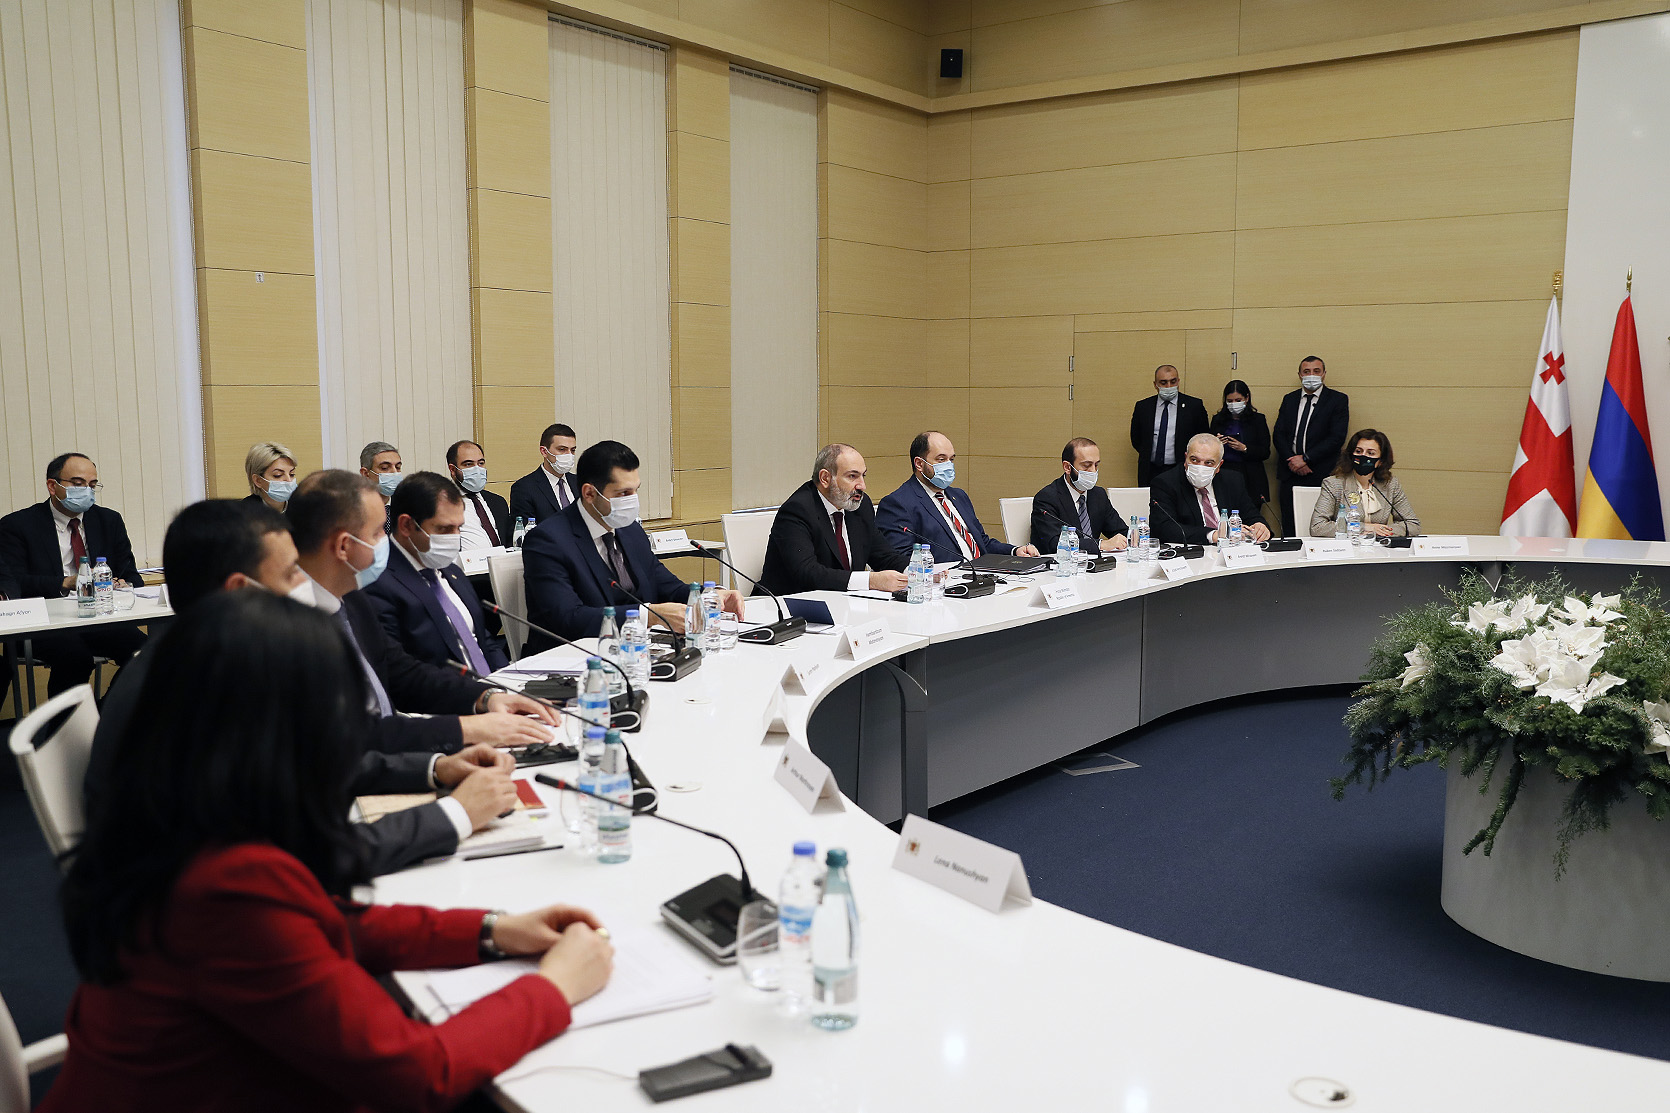 ՀՀ-ն ու Վրաստանը փորձելու են առևտրաշրջանառությունը հասցնել 1 մլրդ դոլարի. կայացել է երկկողմ տնտեսական համագործակցության միջկառավարական հանձնաժողովի նիստը